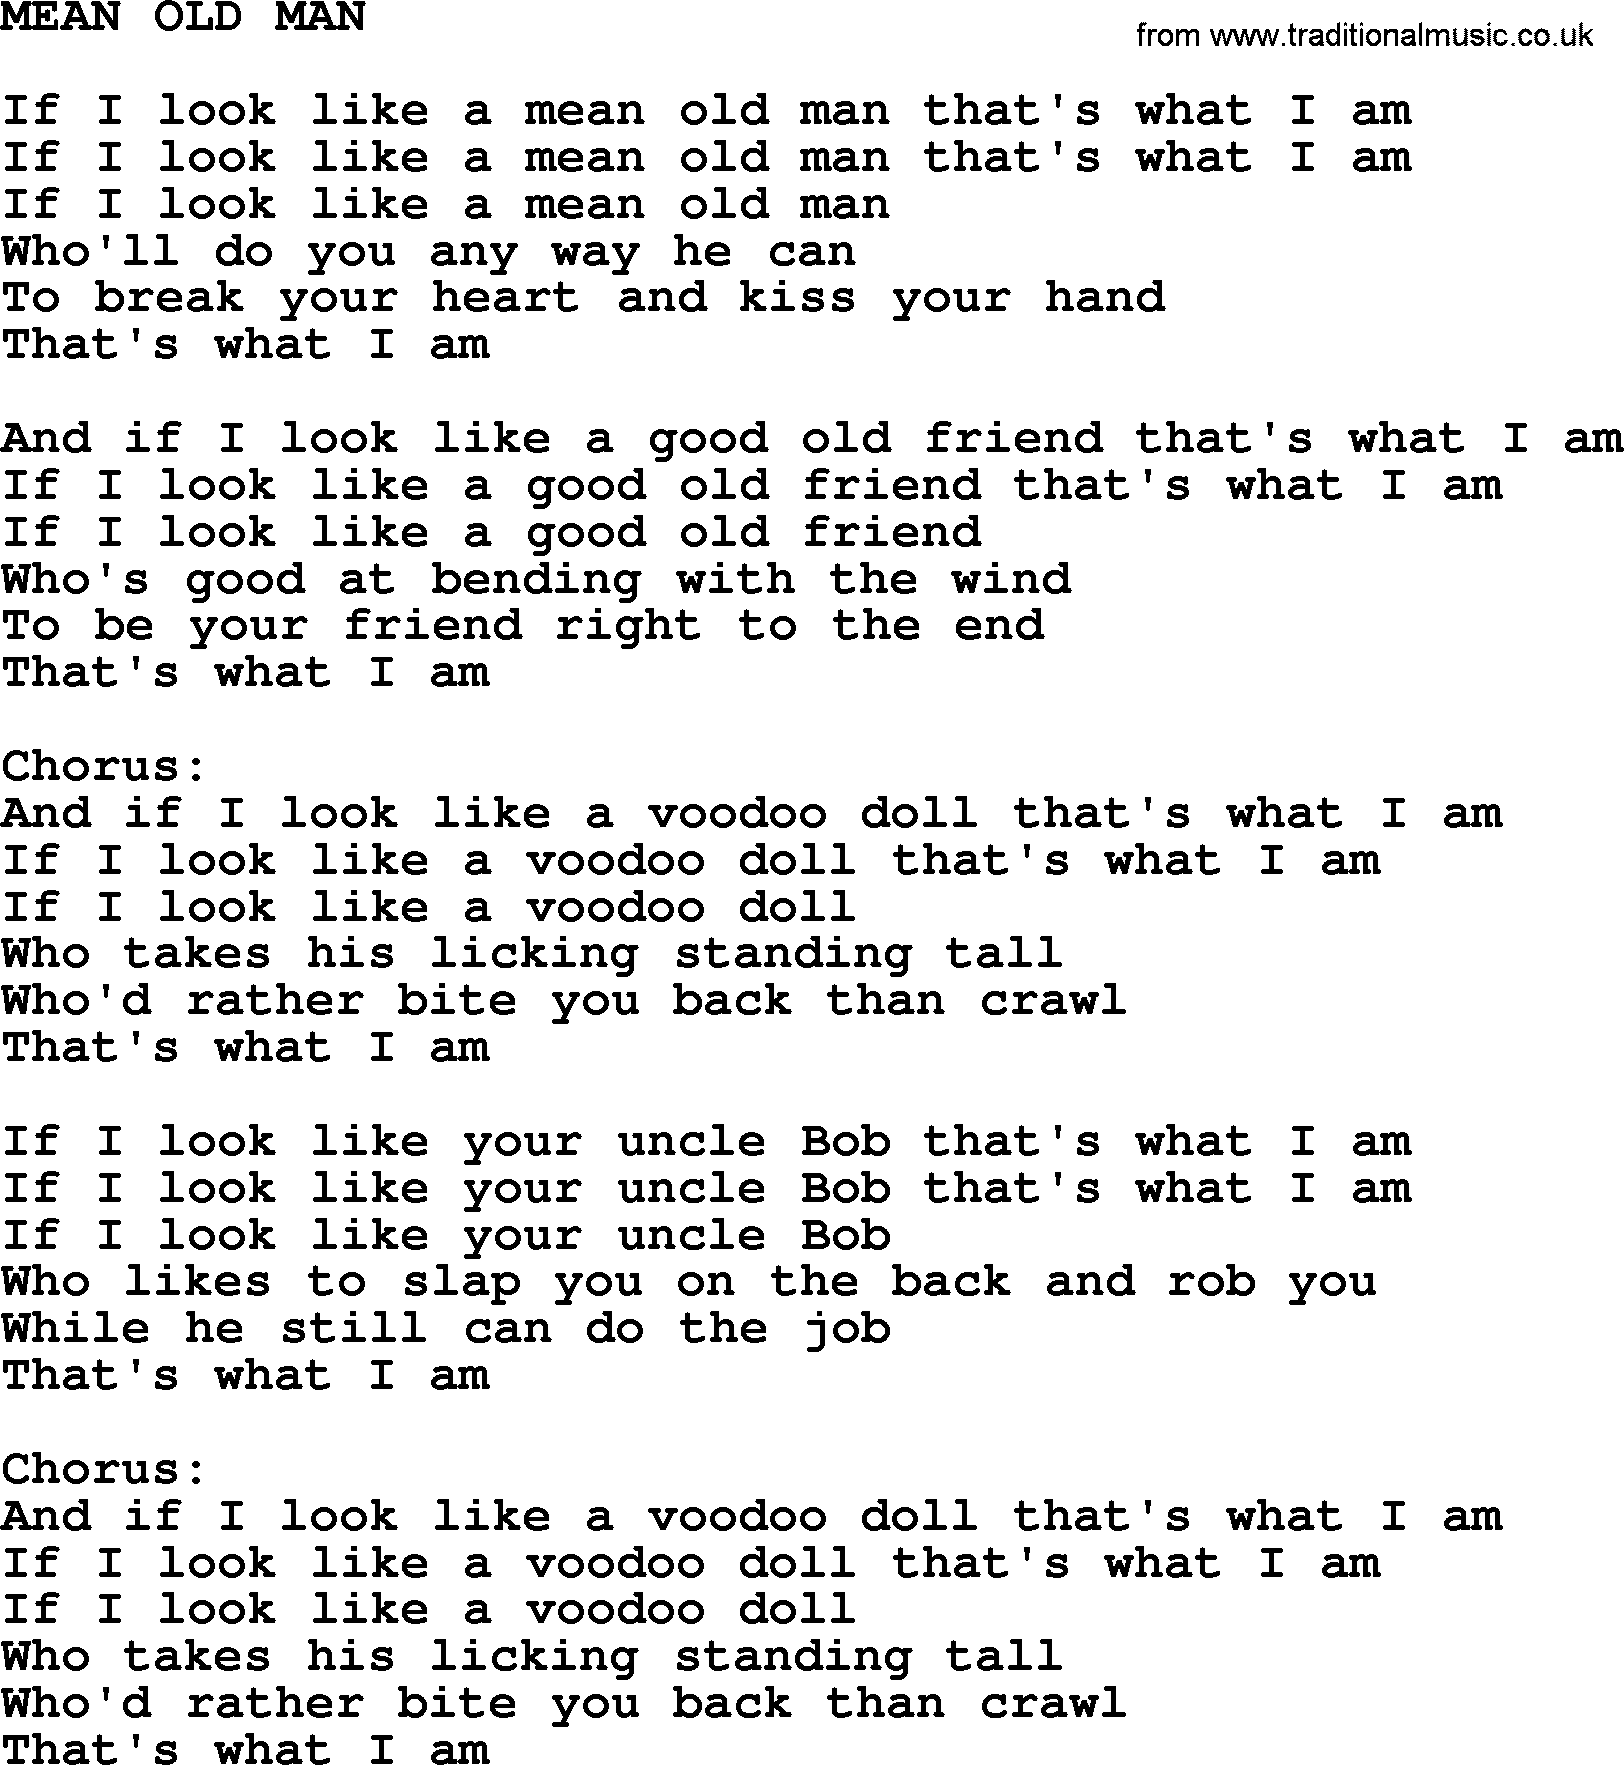 Kris Kristofferson song: Mean Old Man lyrics